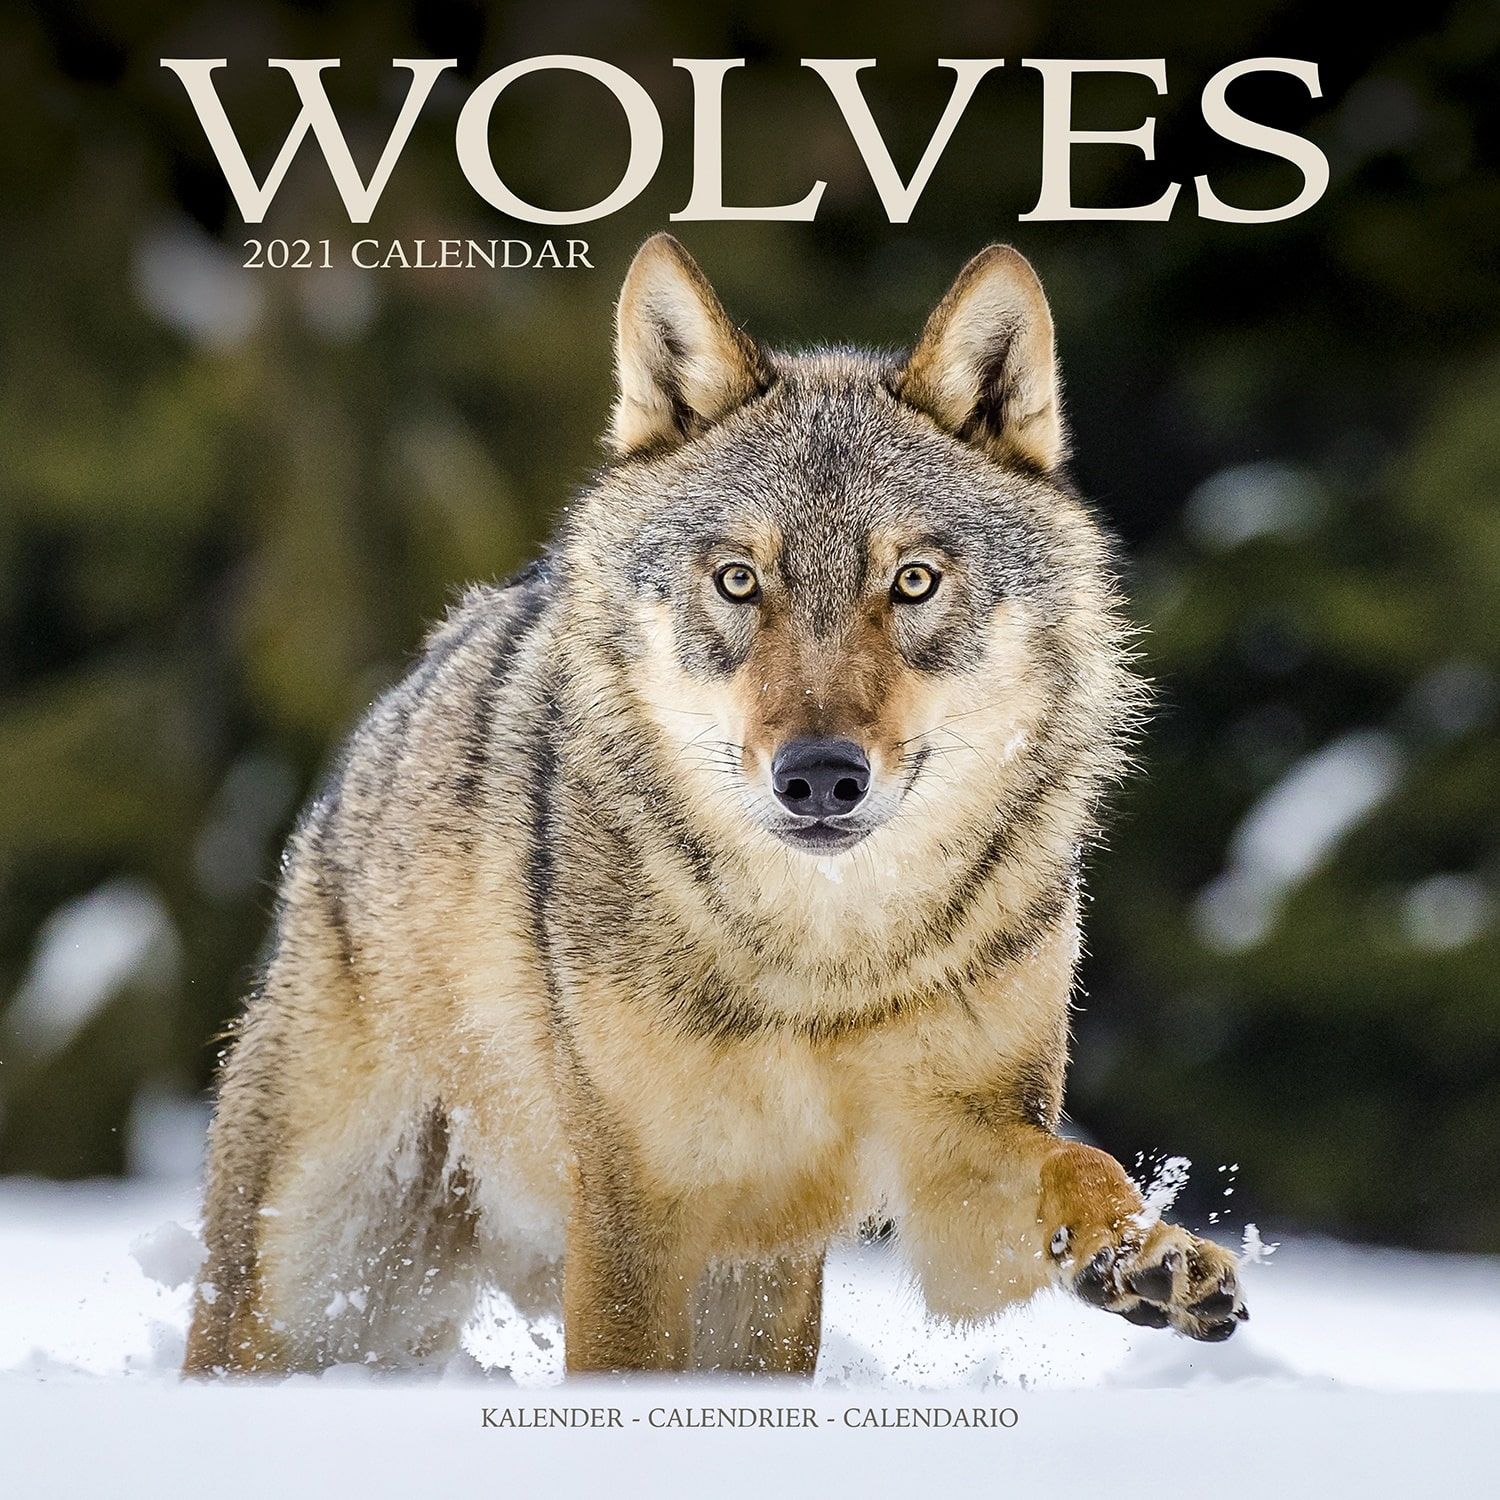 Wolves Wall Calendar 2021 by Avonside eBay